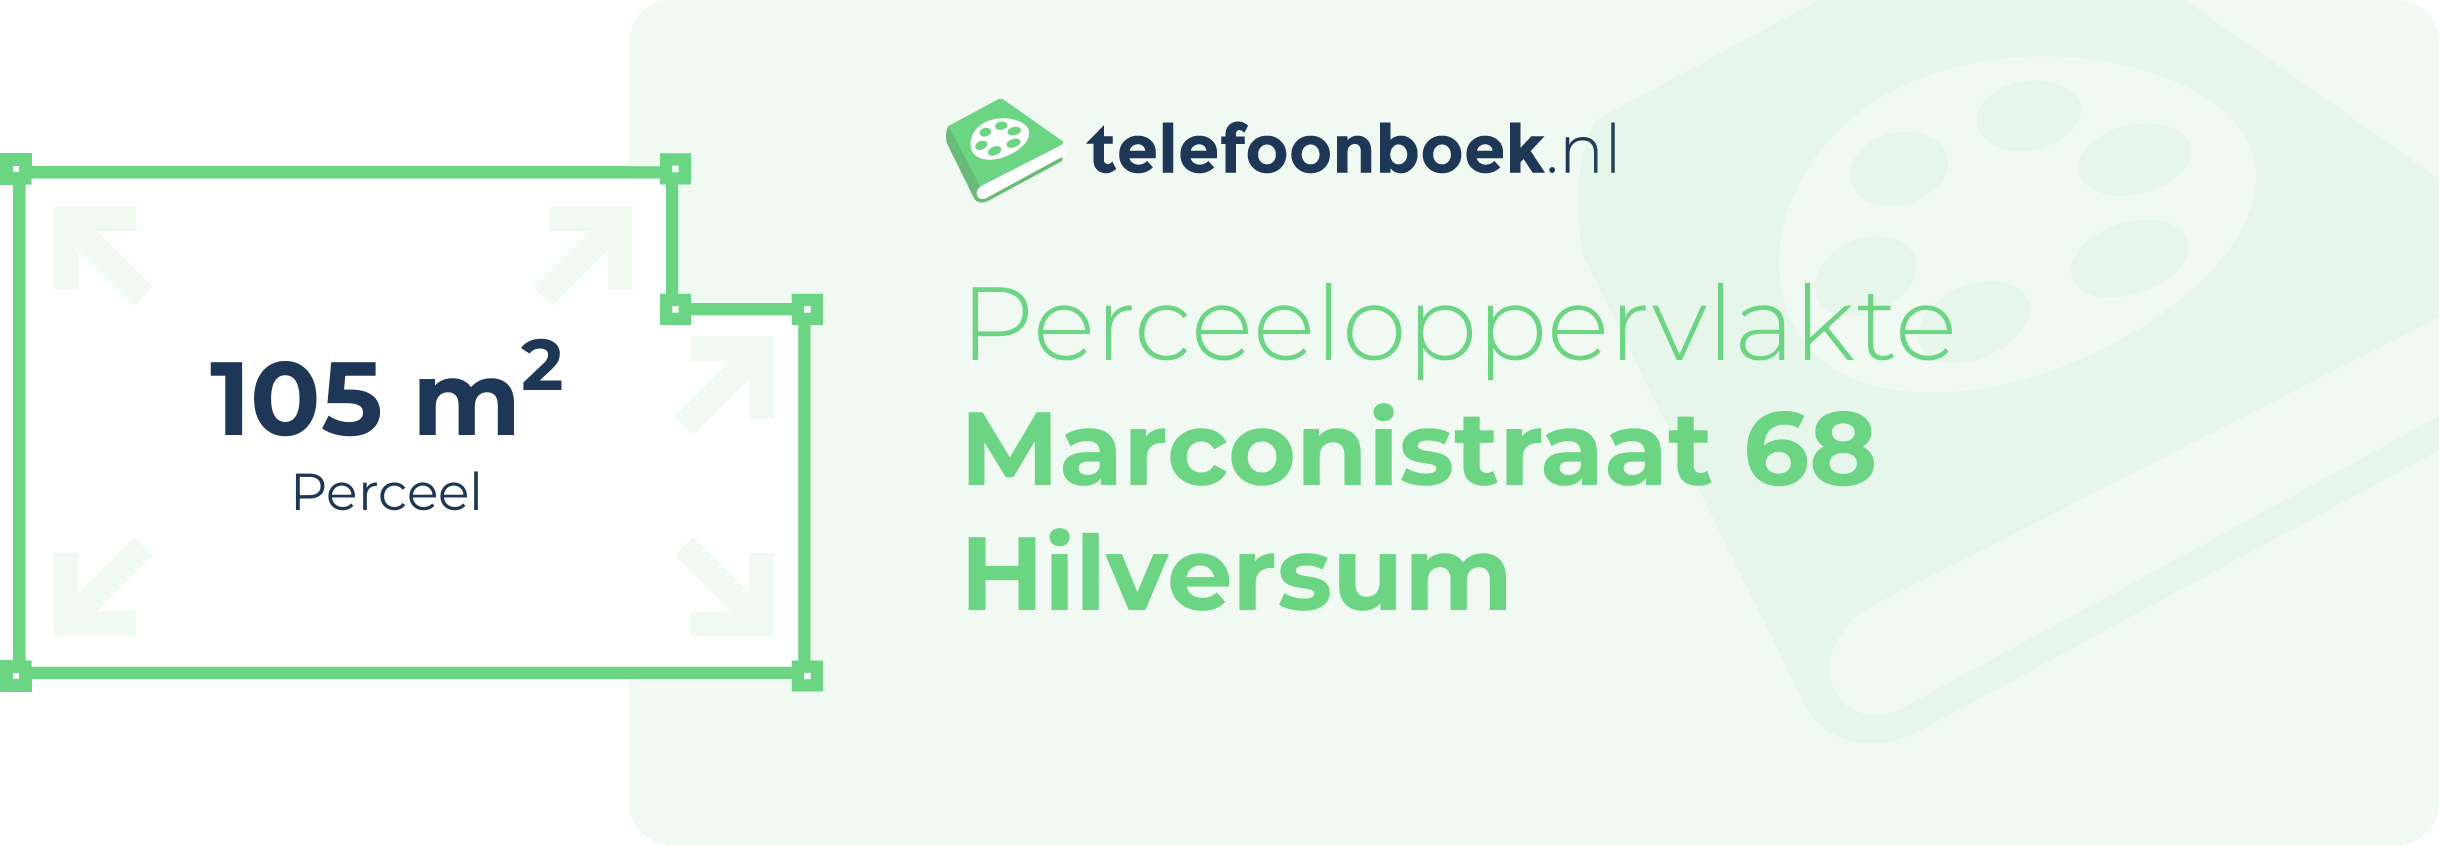 Perceeloppervlakte Marconistraat 68 Hilversum